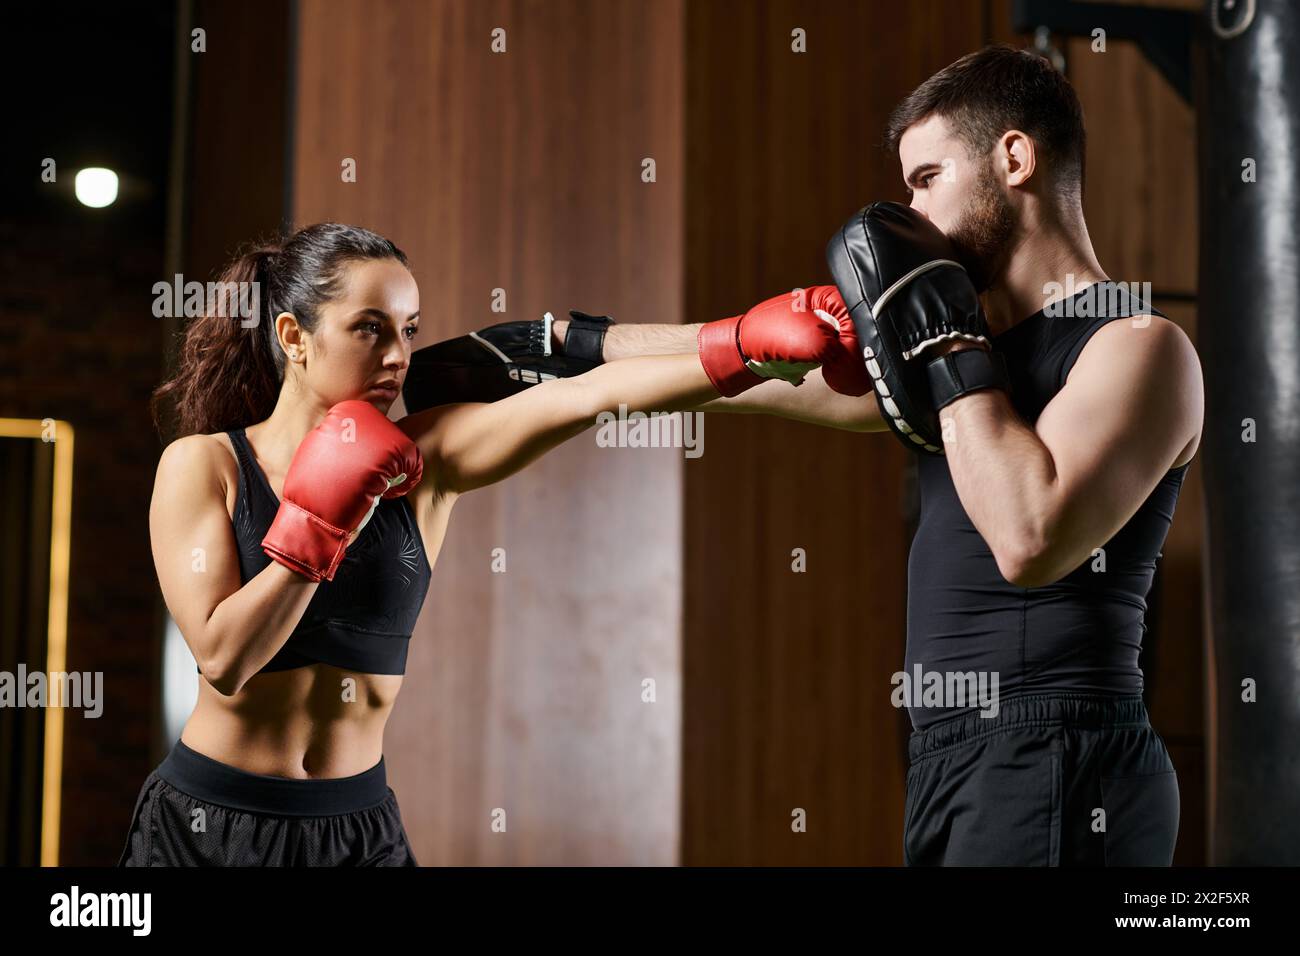 Un entraîneur masculin soutient une sportive brune en tenue active alors qu'elle s'engage dans l'entraînement de boxe dans un gymnase. Banque D'Images